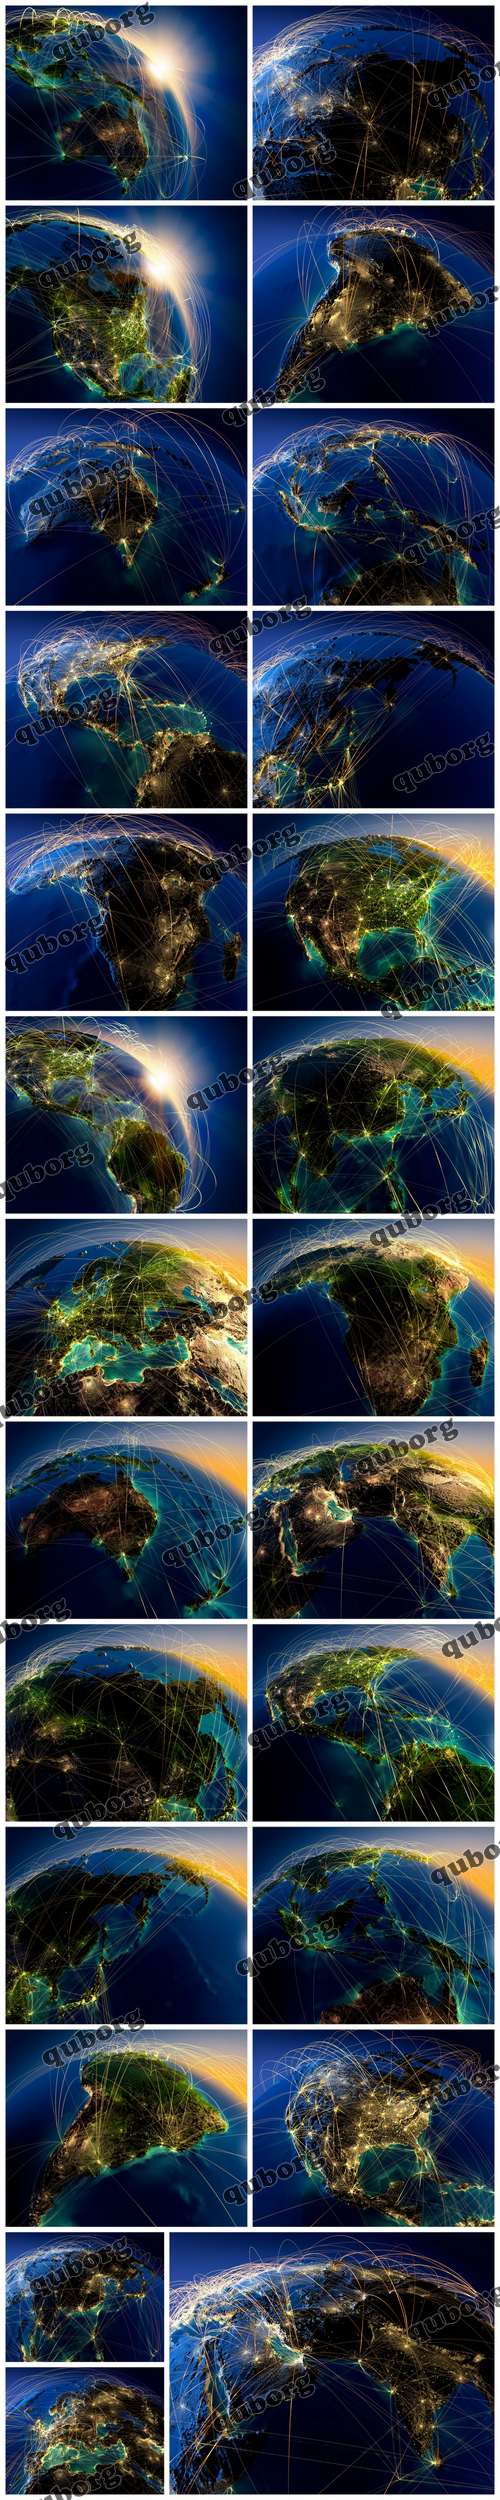 Stock Photos - Planet Earth Enhanced License